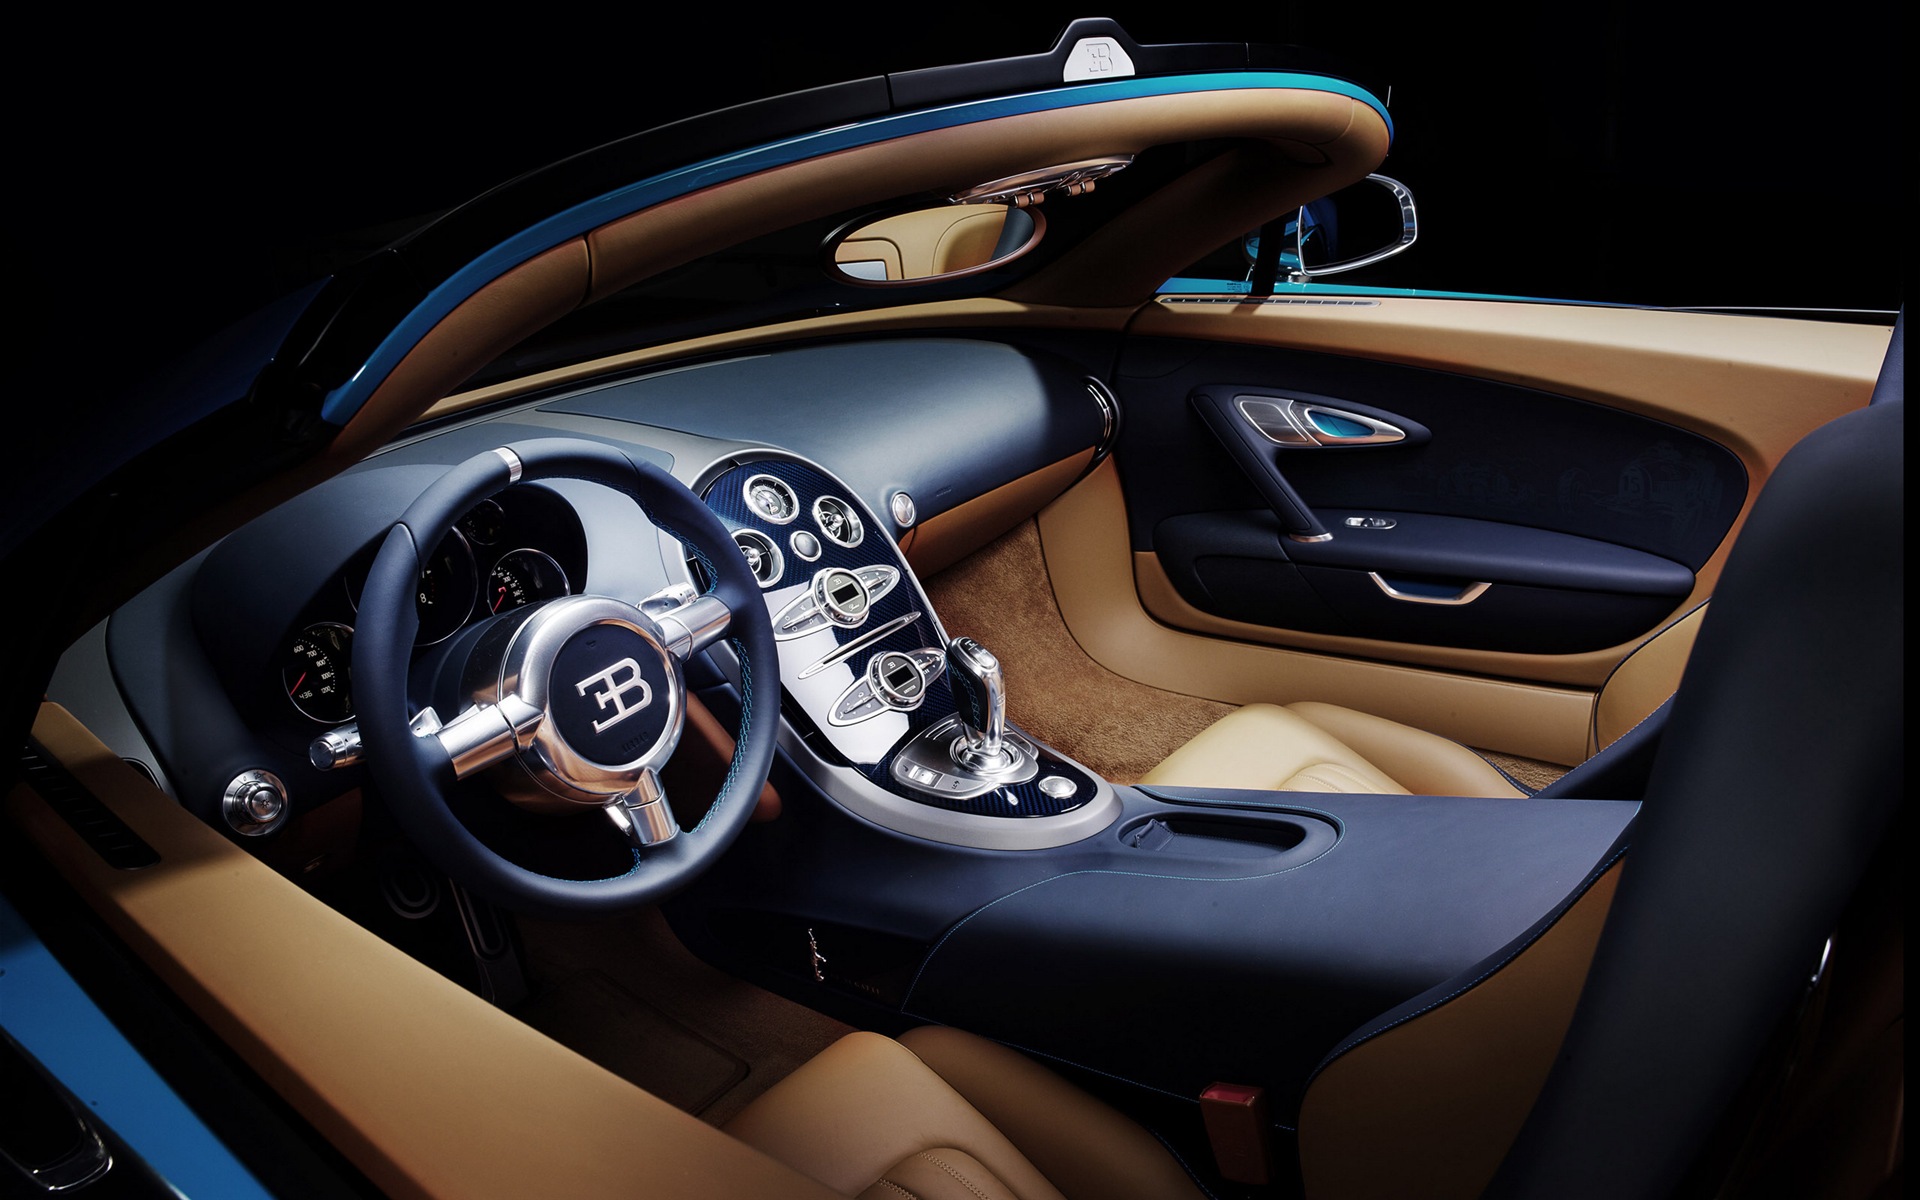 2013 Bugatti Veyron 16.4 Grand Sport Vitesse supercar fondos de pantalla de alta definición #7 - 1920x1200